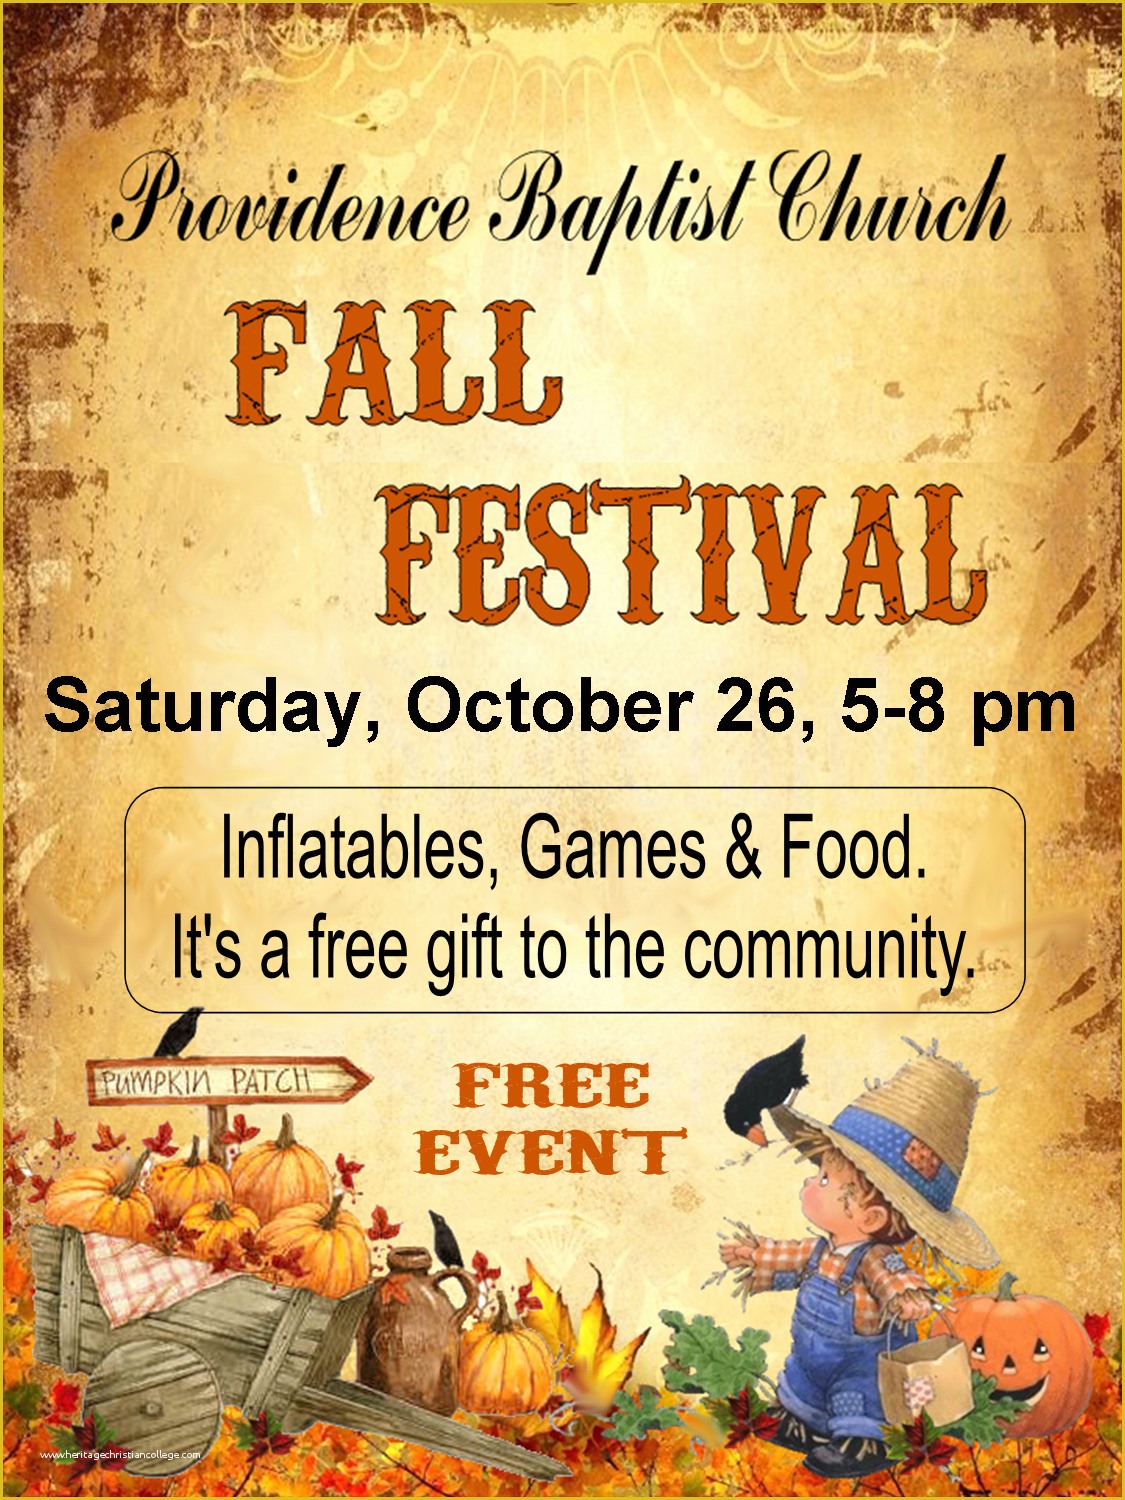 Harvest Festival Flyer Free Template Of Harvest Festival Church Flyer